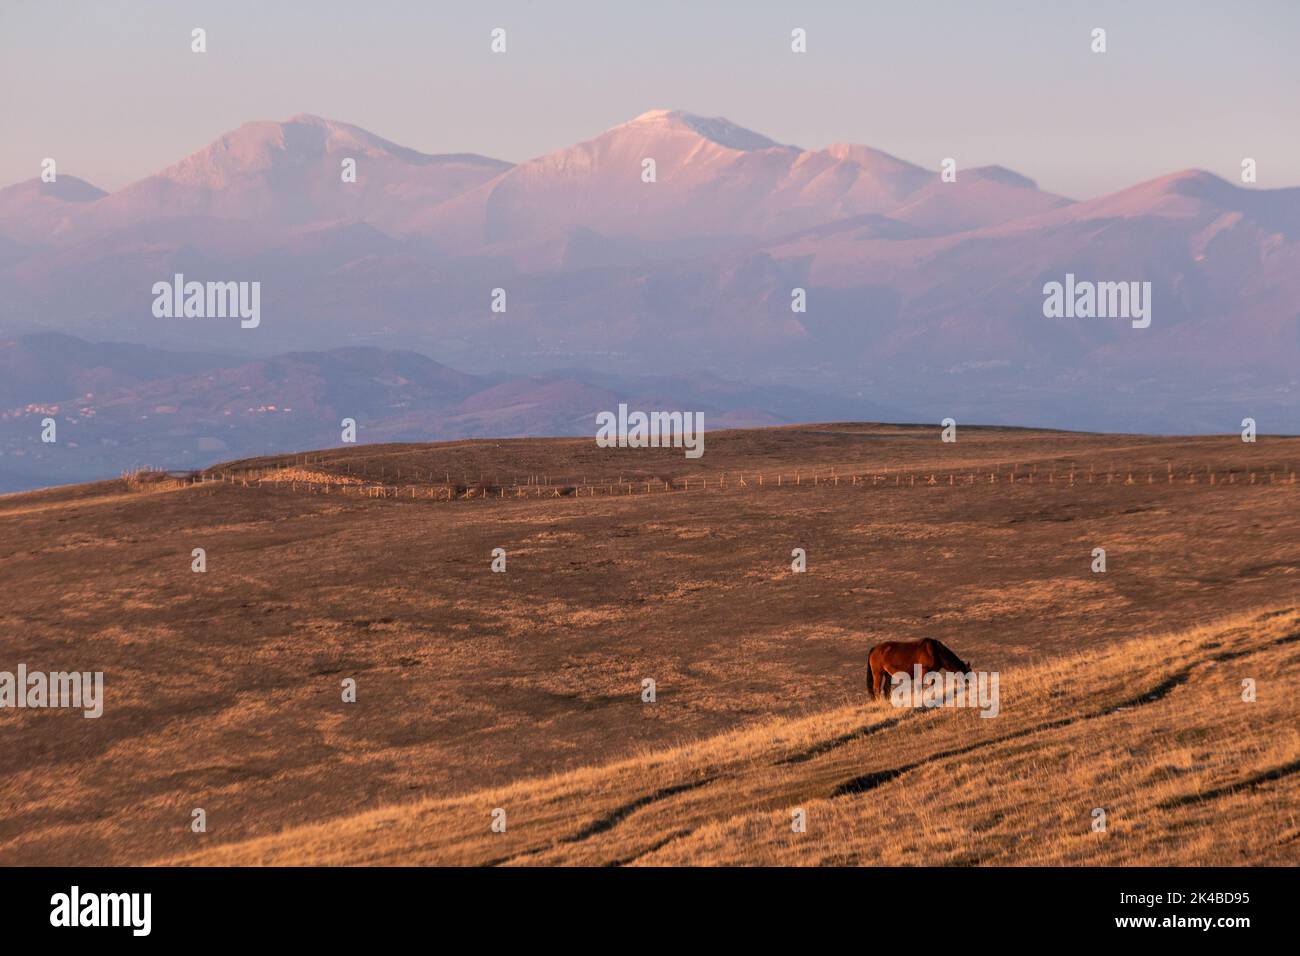 Des chevaux se pastant sur une montagne à l'heure d'or, avec la brume et les montagnes enneigées en arrière-plan Banque D'Images